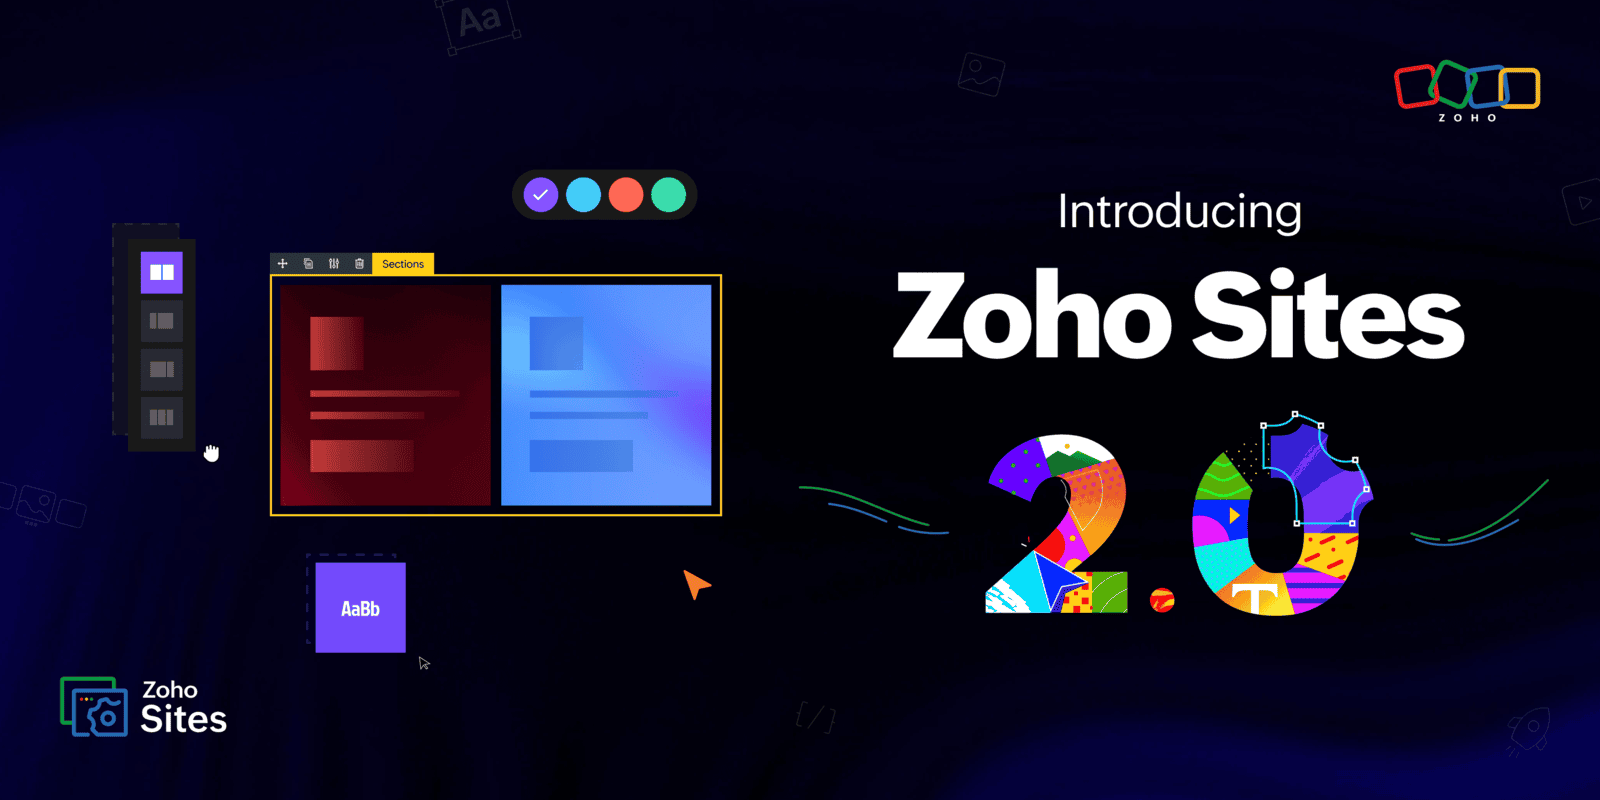 Zoho Sites 2.0